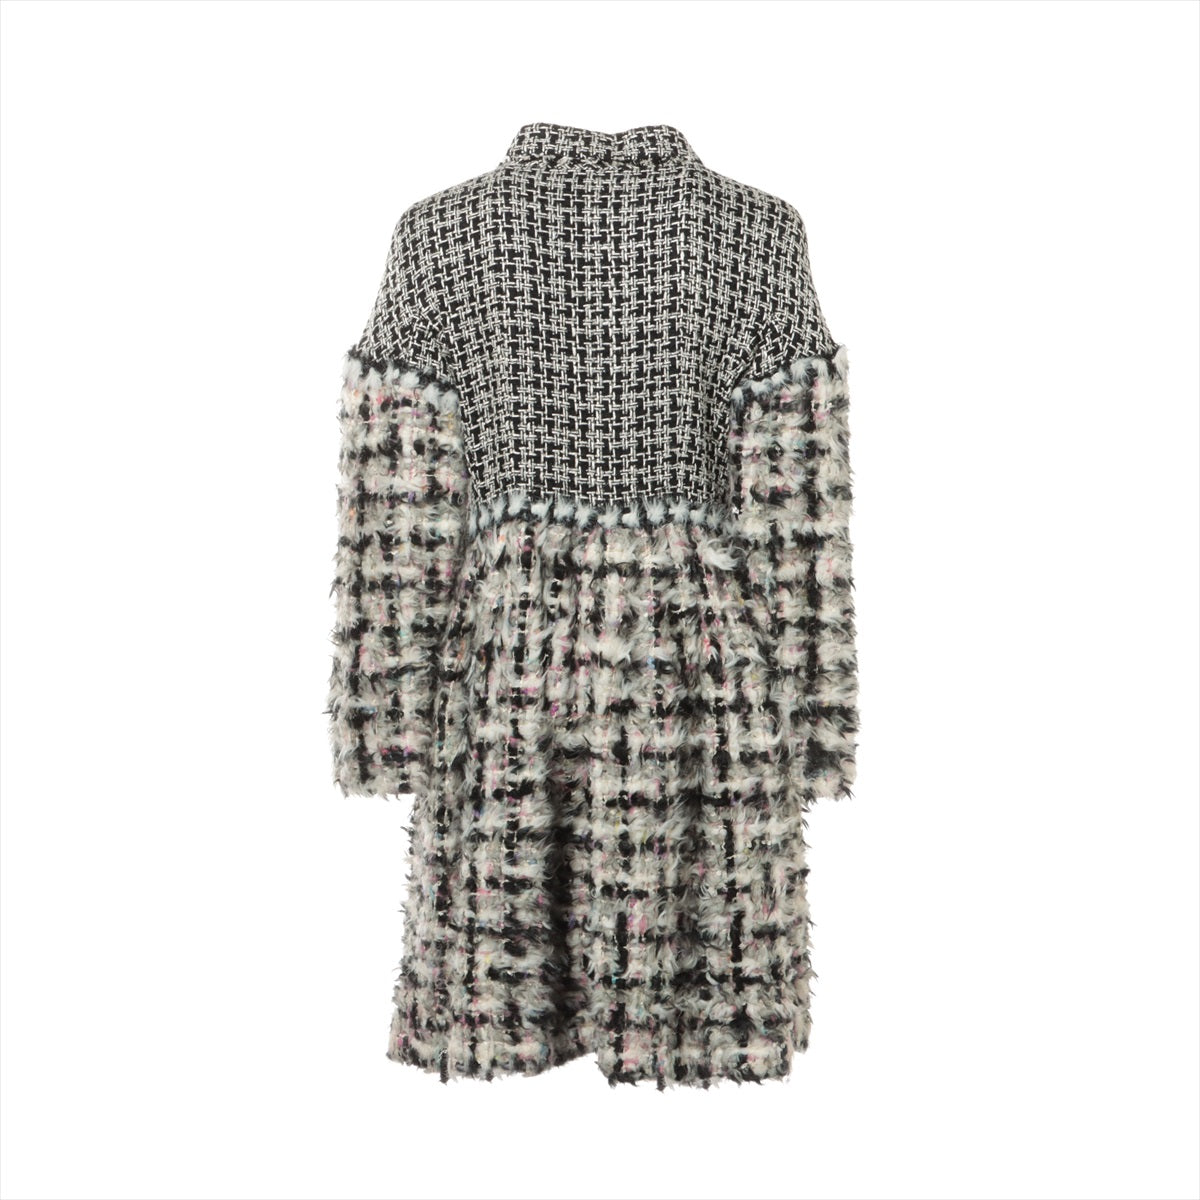 Chanel Coco Mark Gripoix P39 Tweed coats 40 Ladies' Multicolor  Fantasy  10AW Collection Runway Look 21 P39540W04561